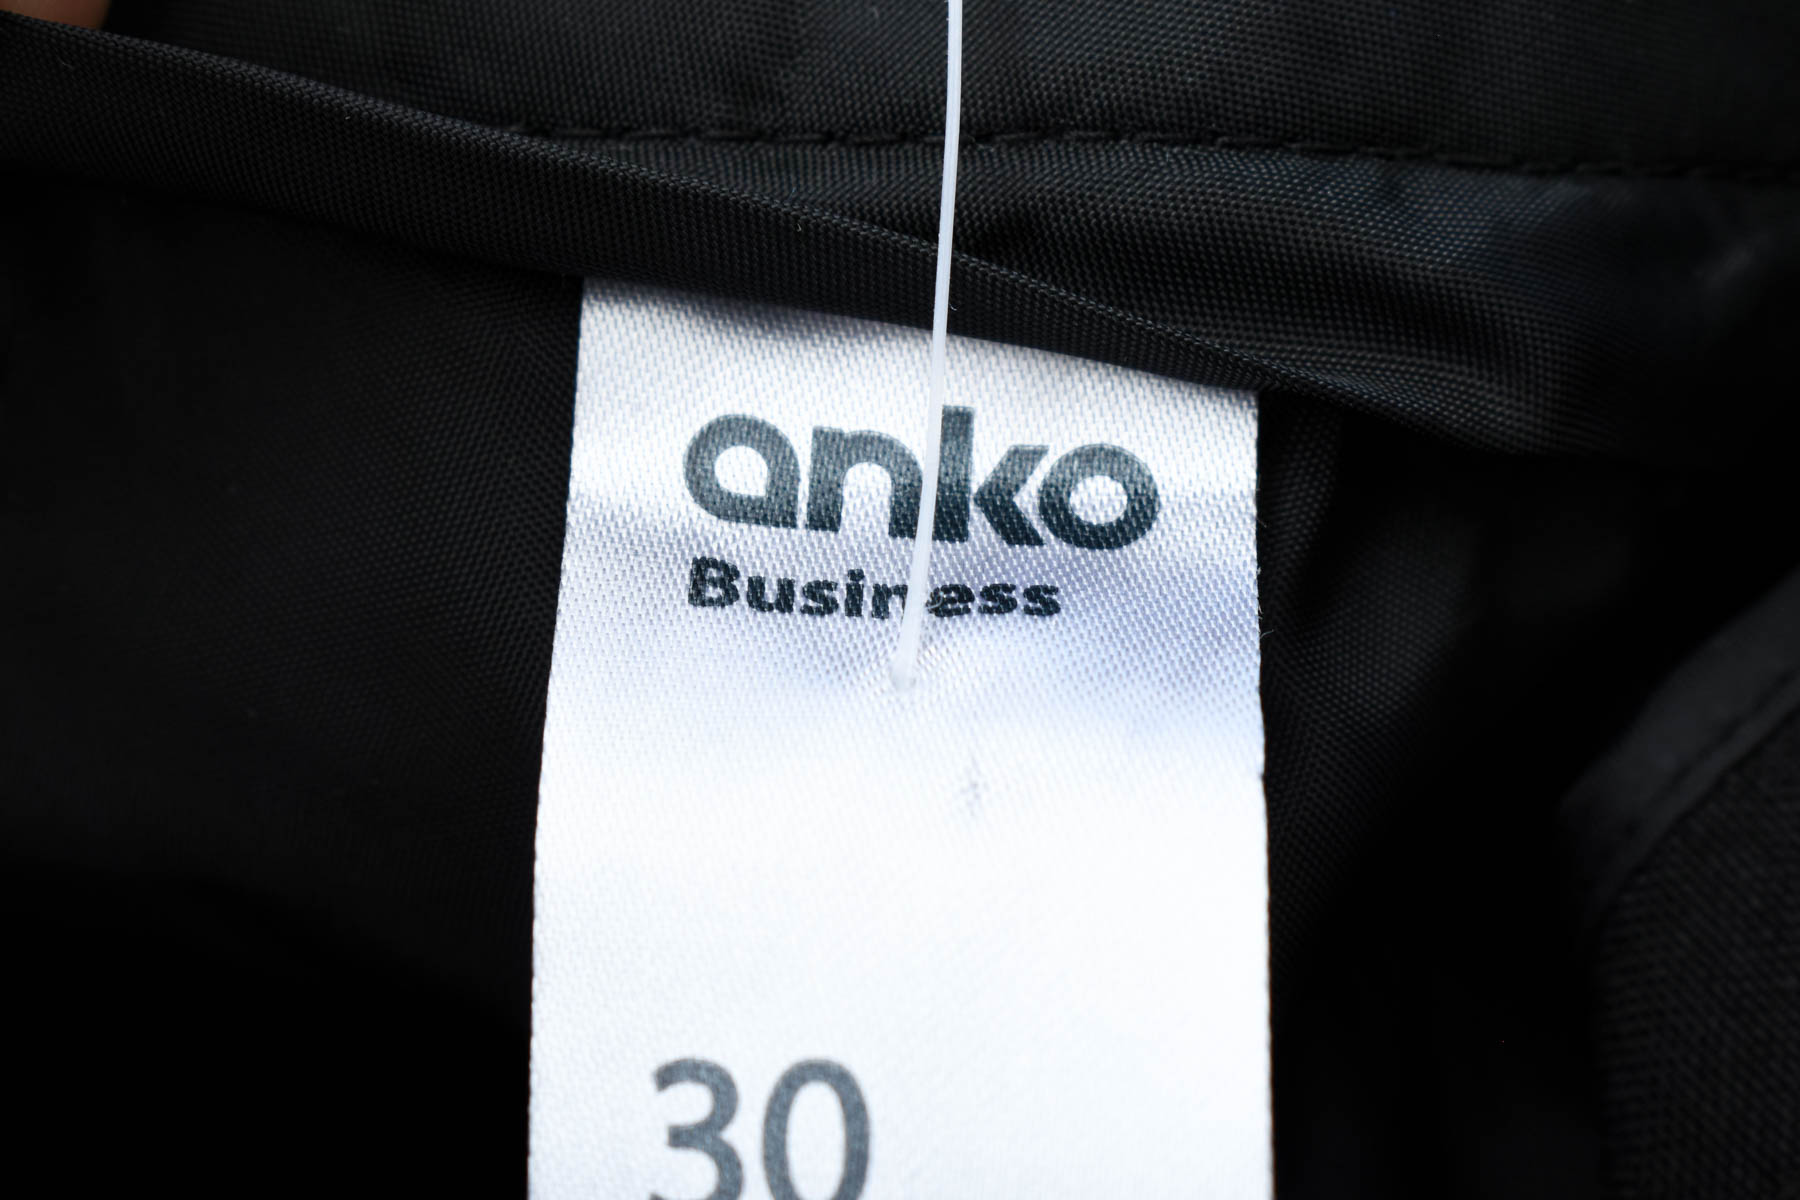 Pantaloni de damă - Anko - 2